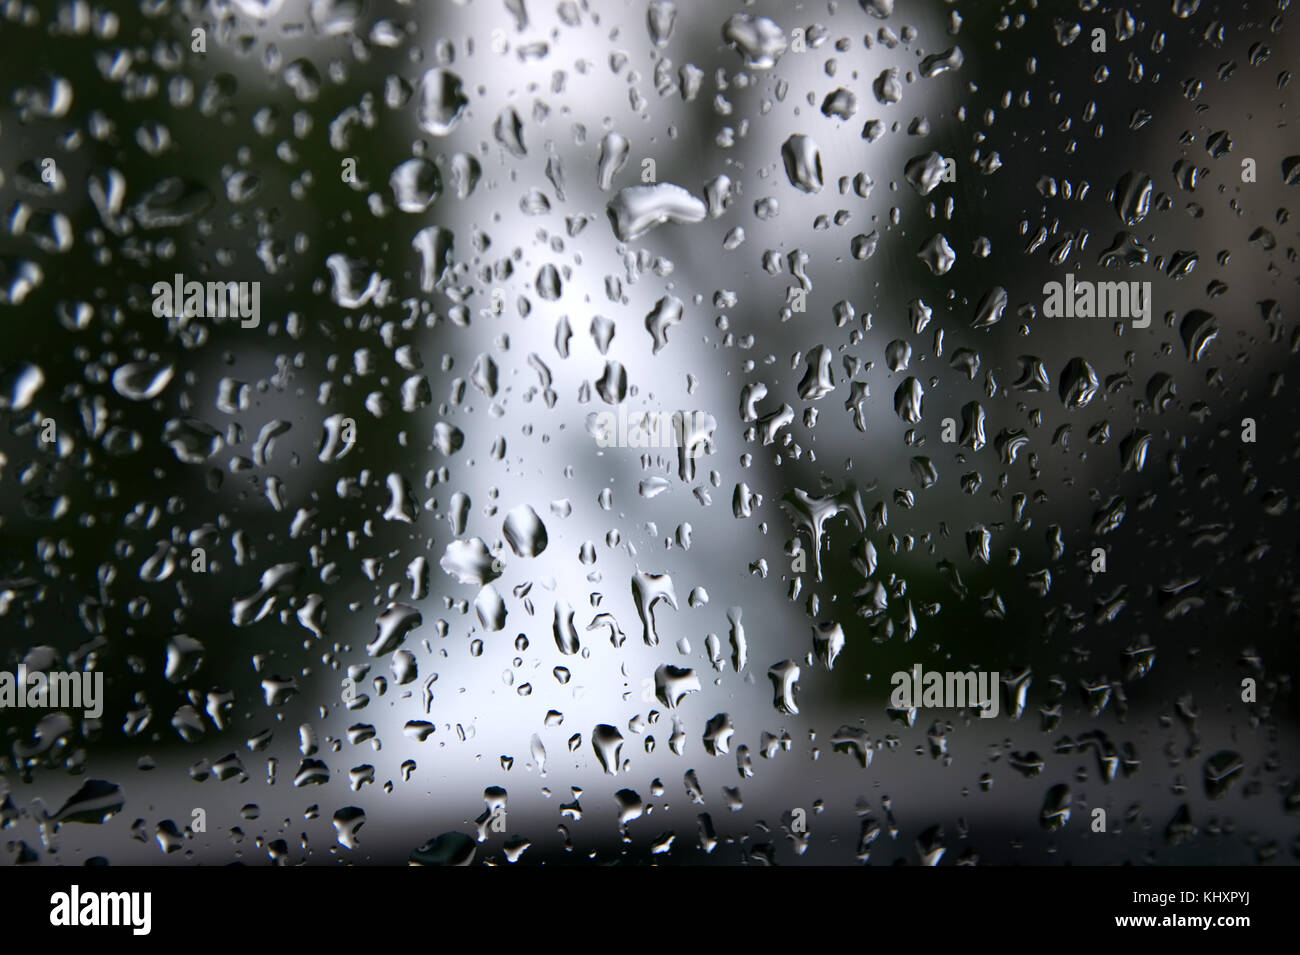 Tropfen Wasser regnet auf einer Fensterscheibe. Stockfoto